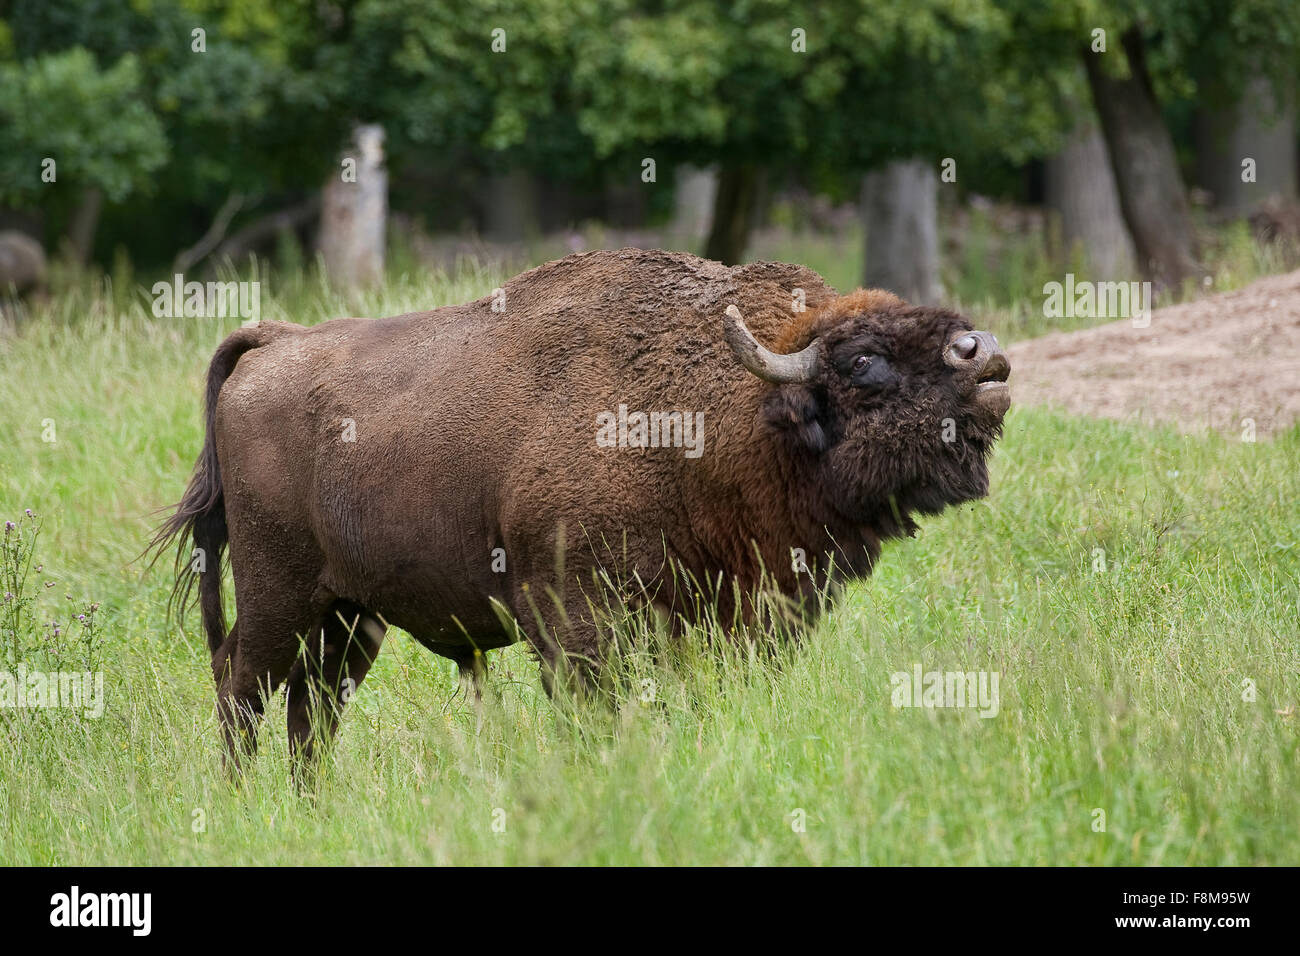 European bison, wisent, European wood bison, male, Wisent, Männchen, Bulle, Europäisches Bison, Bison bonasus, Wildrind Stock Photo